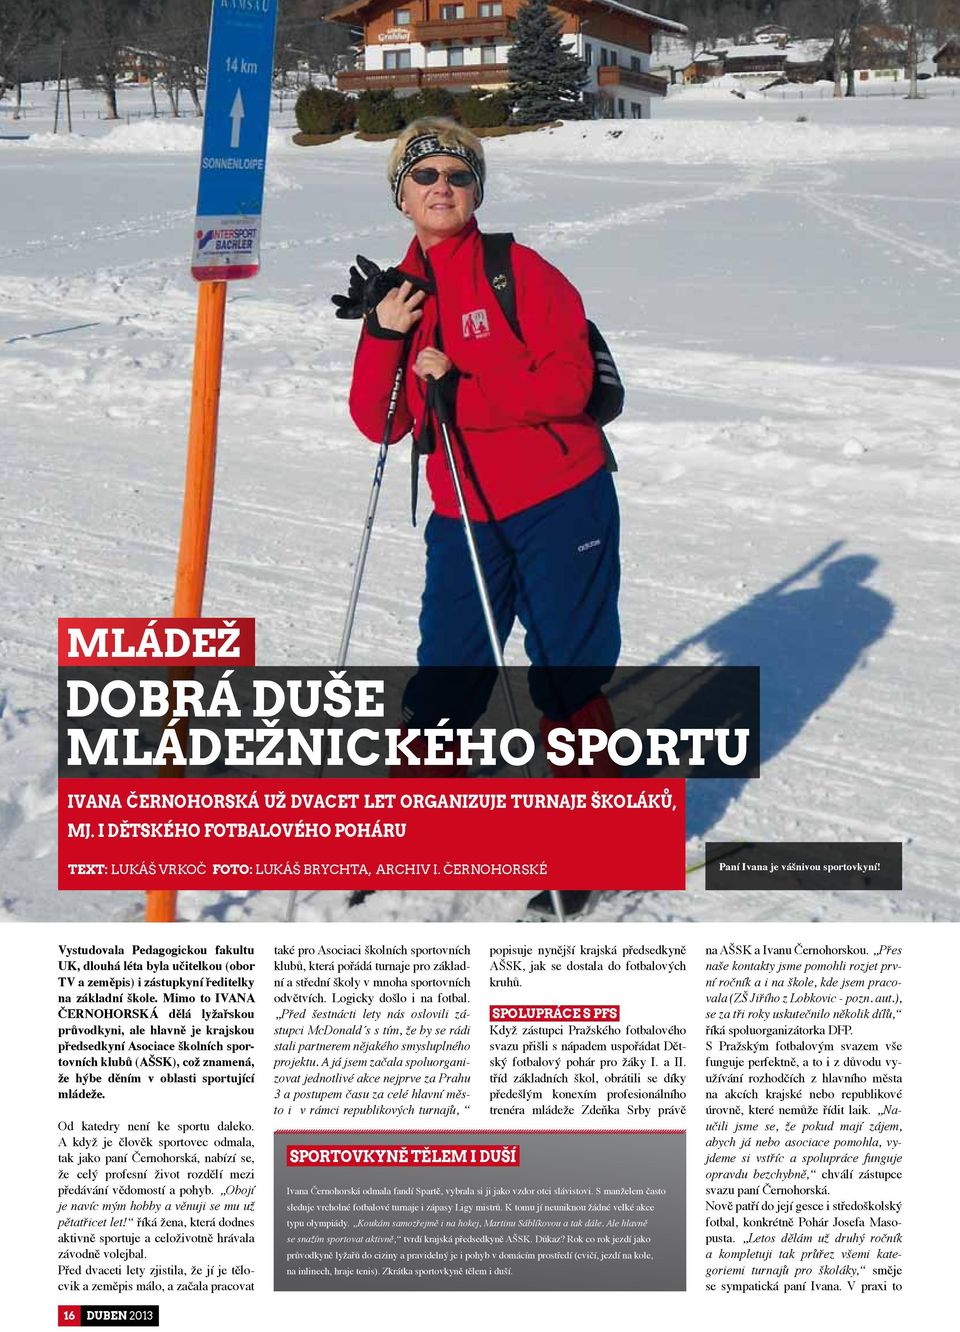 Mimo to IVANA ČERNOHORSKÁ dělá lyžařskou průvodkyni, ale hlavně je krajskou předsedkyní Asociace školních sportovních klubů (AŠSK), což znamená, že hýbe děním v oblasti sportující mládeže.